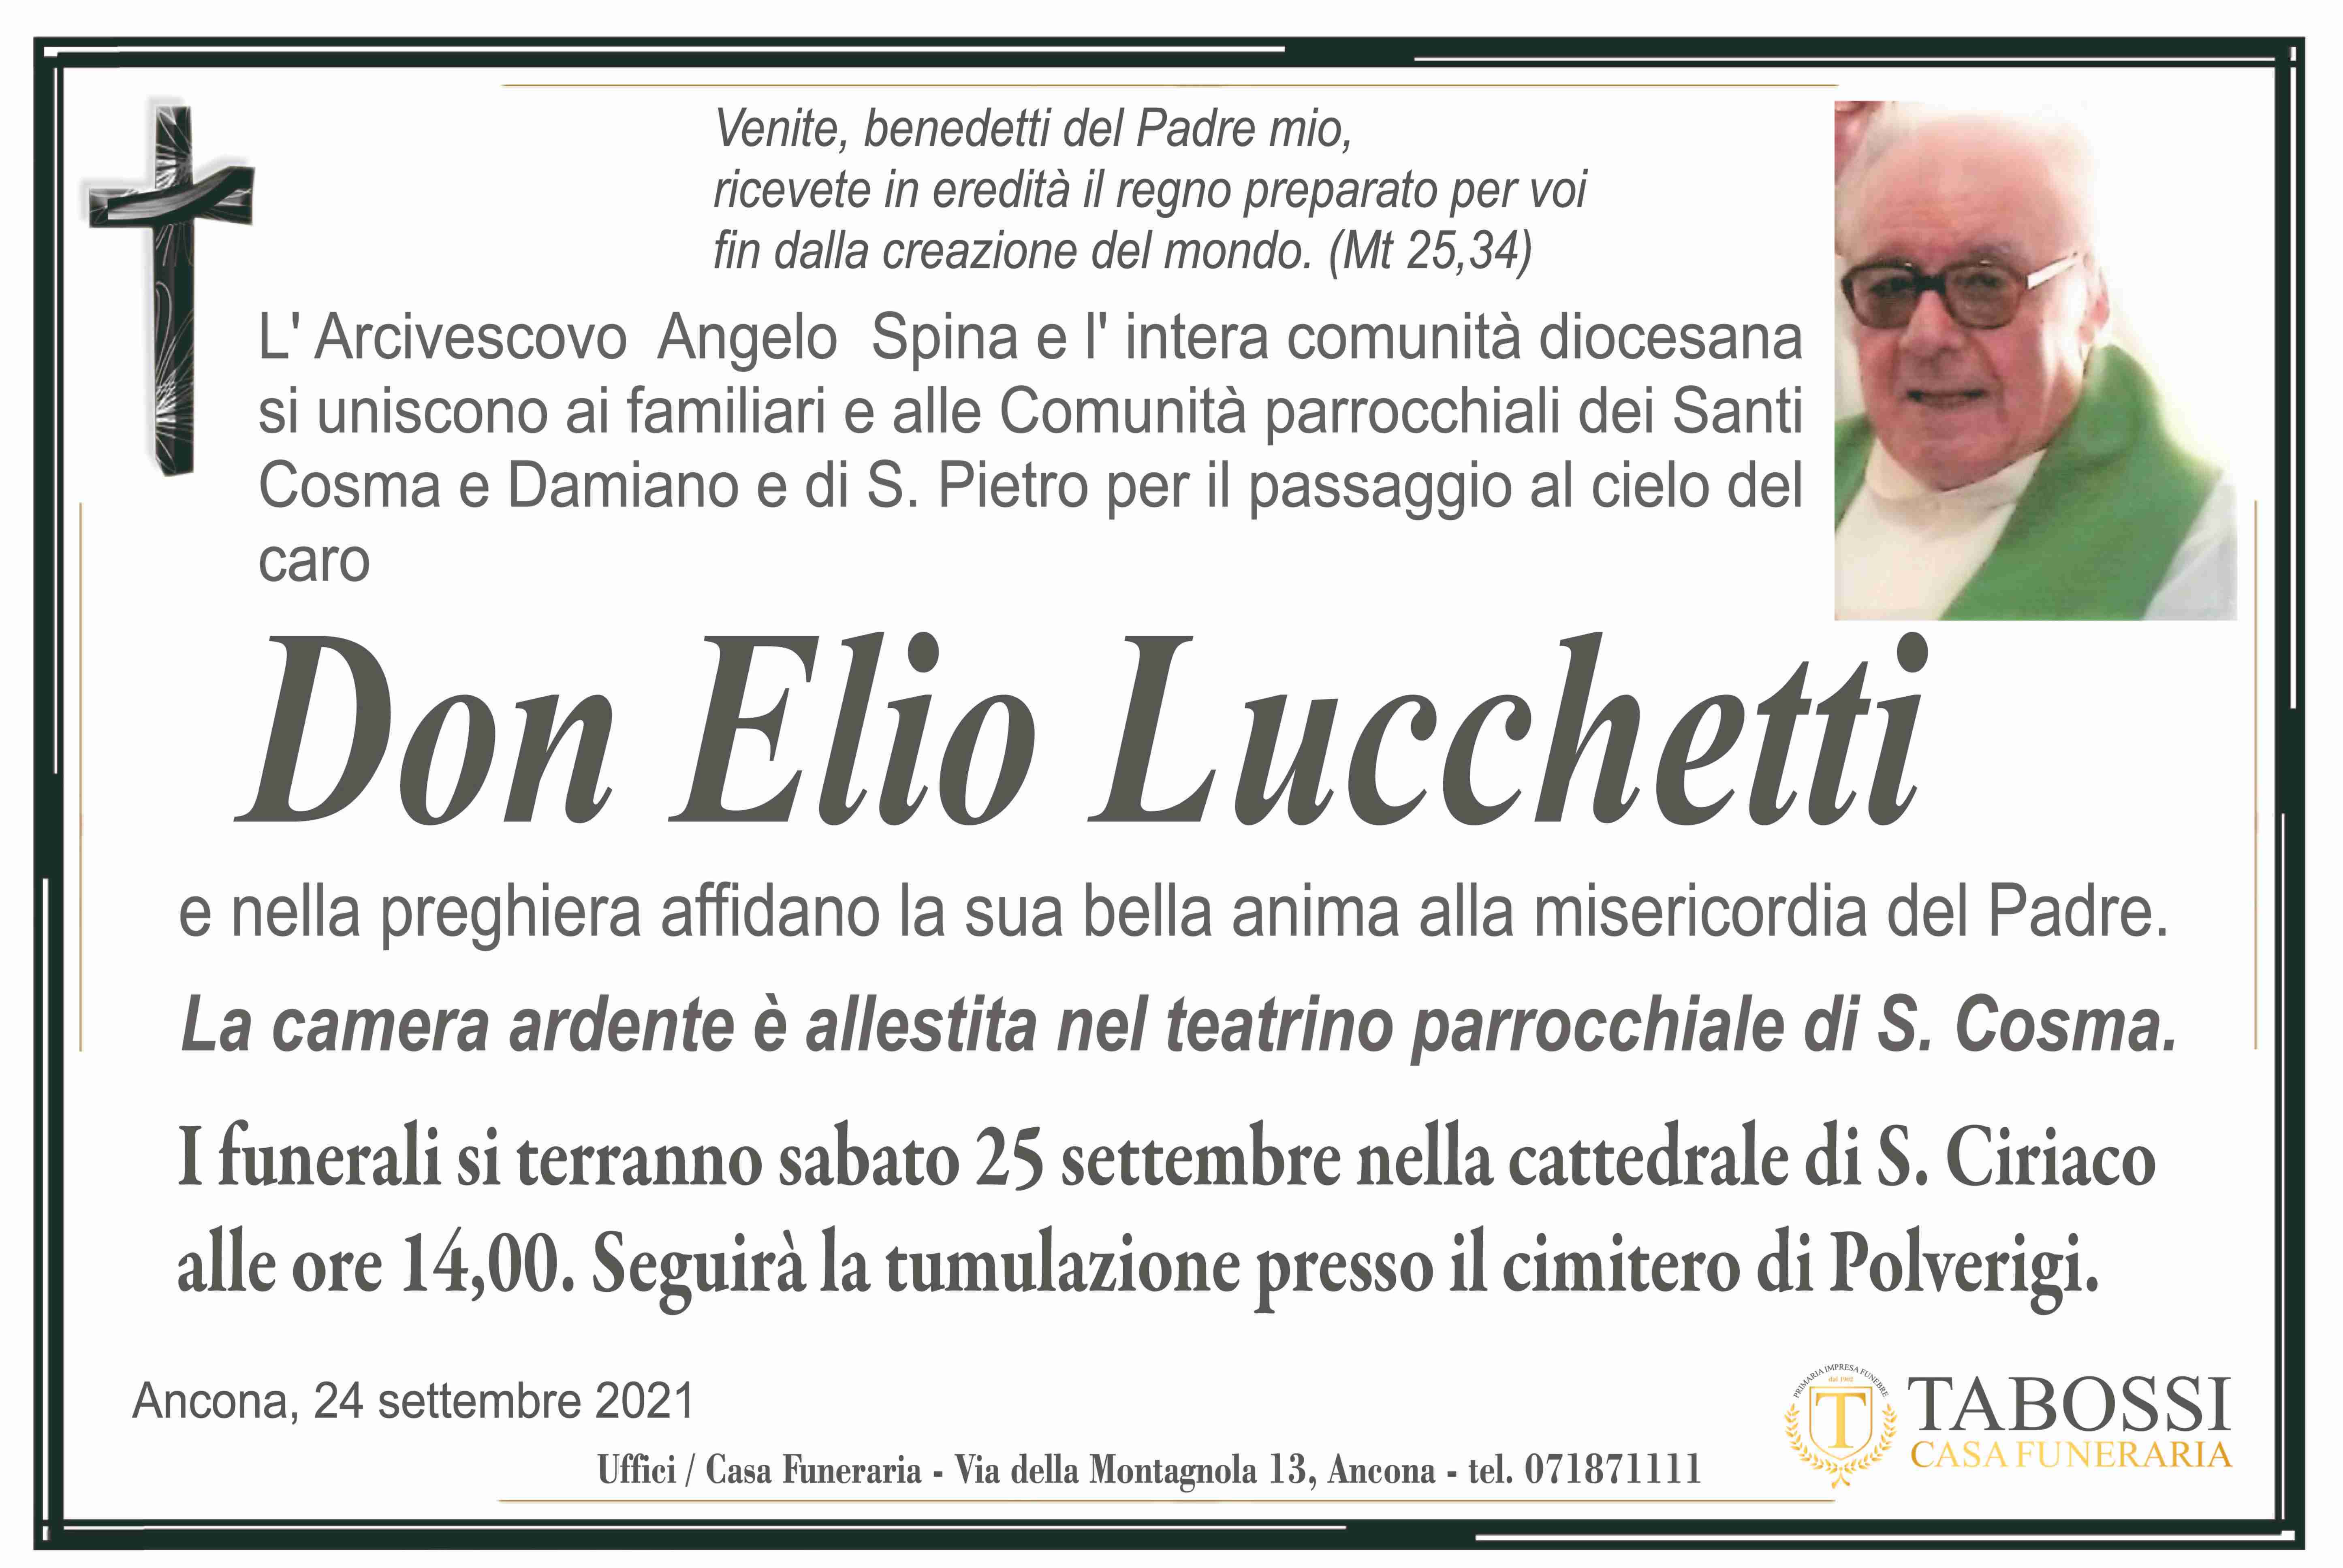 Don Elio Lucchetti